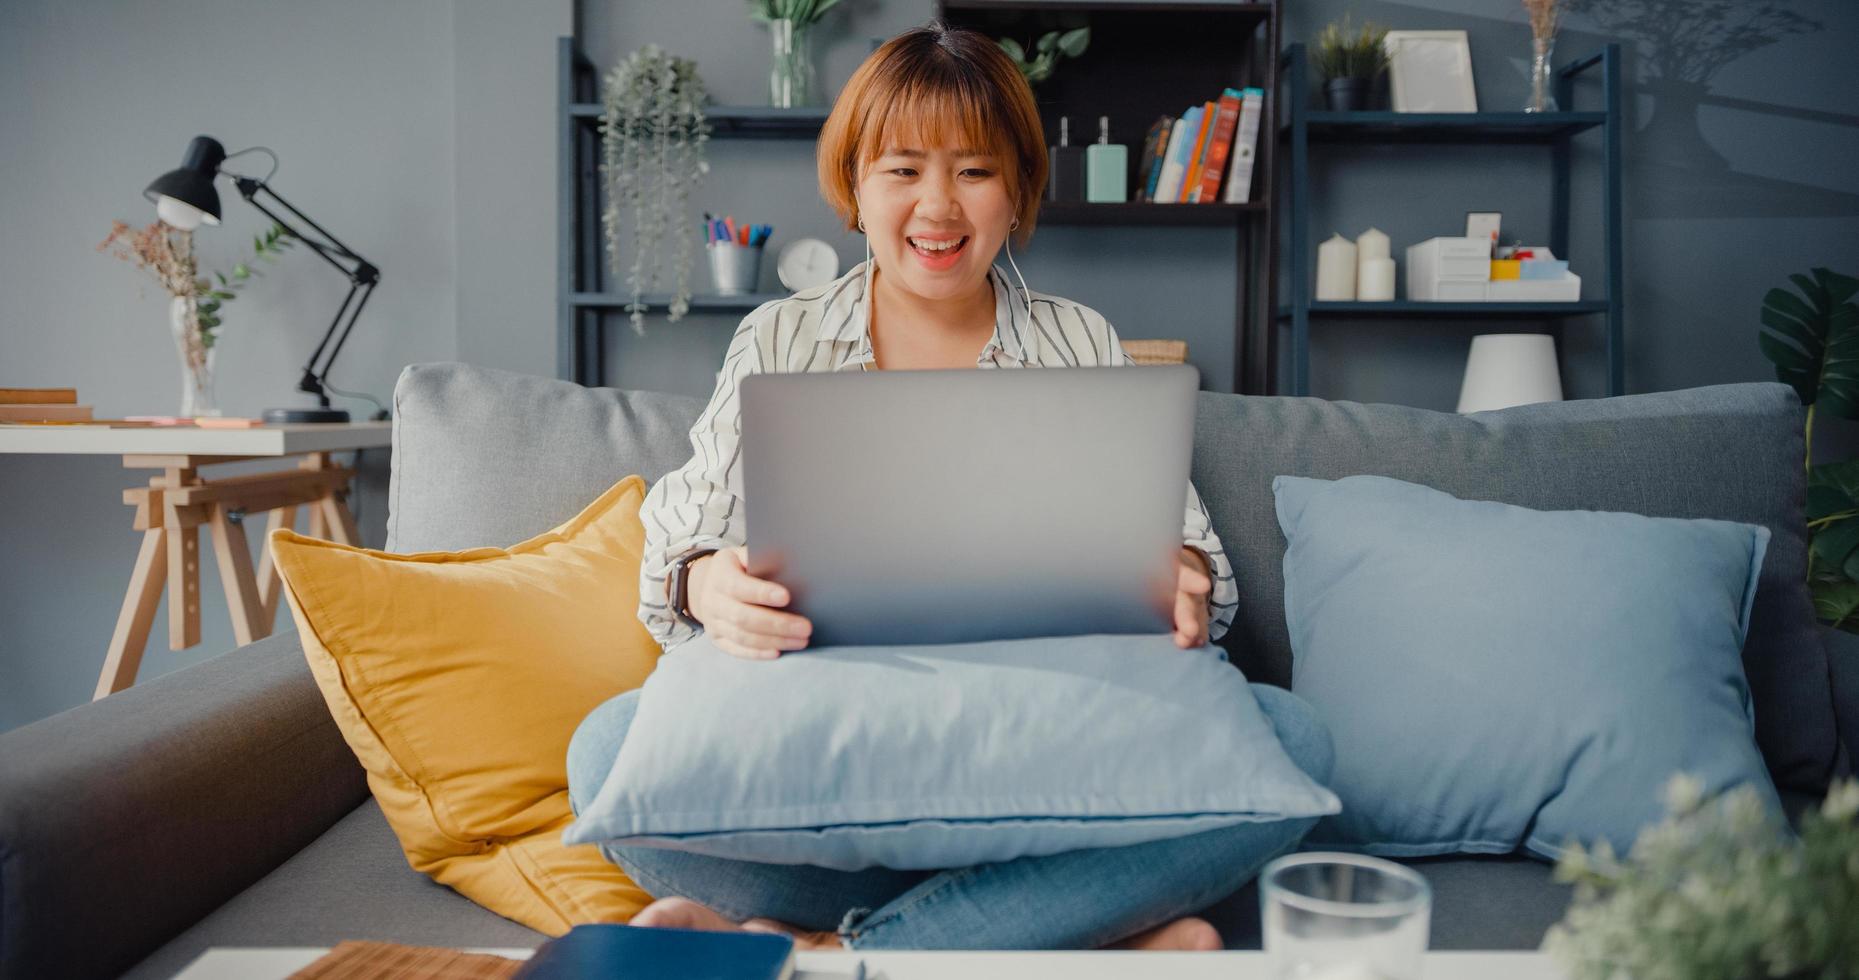 Asia empresaria usando laptop hablar con colegas sobre el plan en videollamada mientras trabaja desde casa en la sala de estar foto